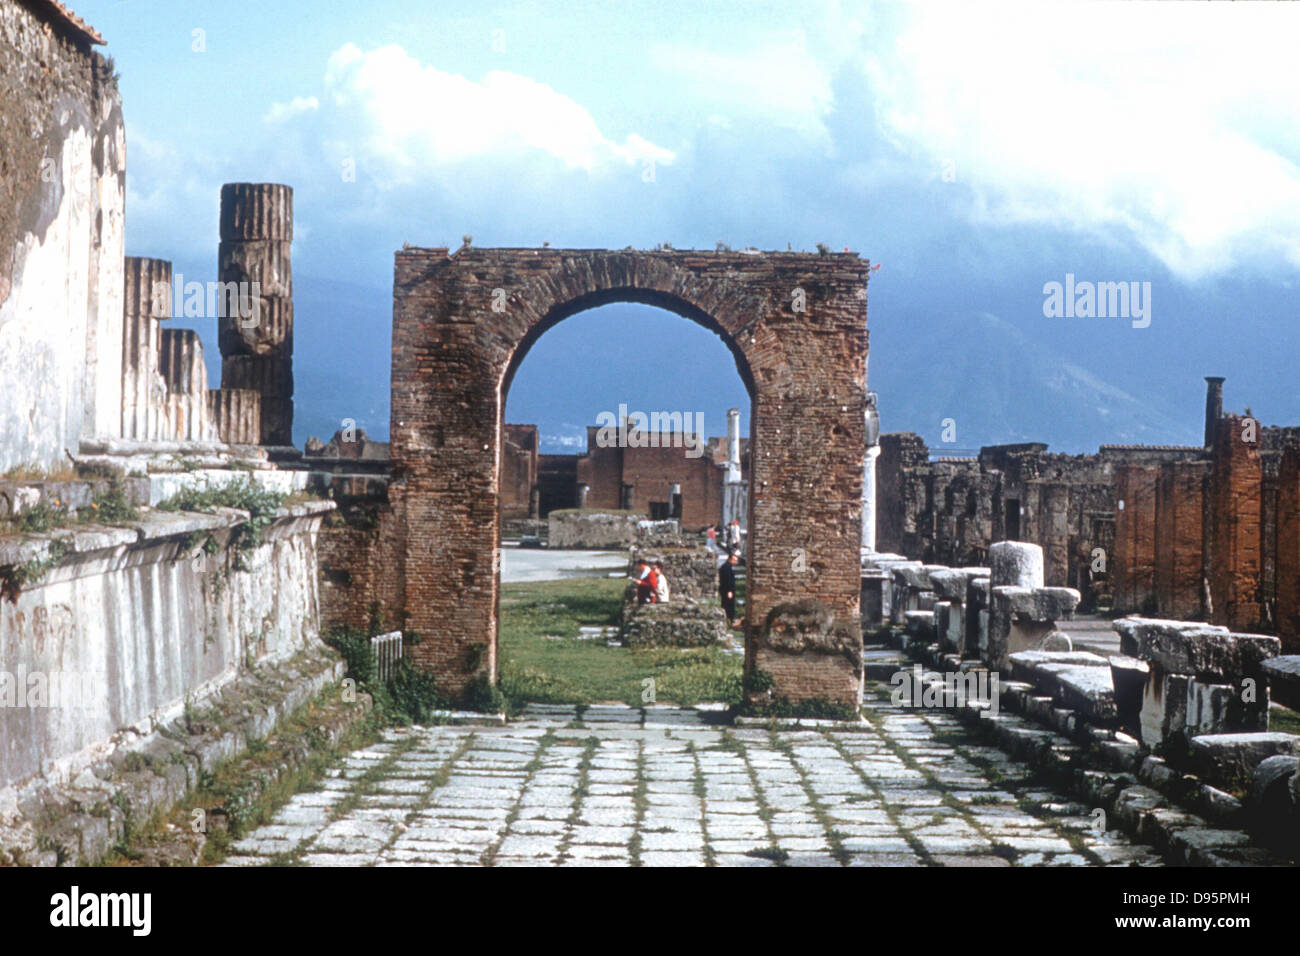 Roma Antigua: Pompeya. Arco y camino. El siglo I DC. Foto de stock